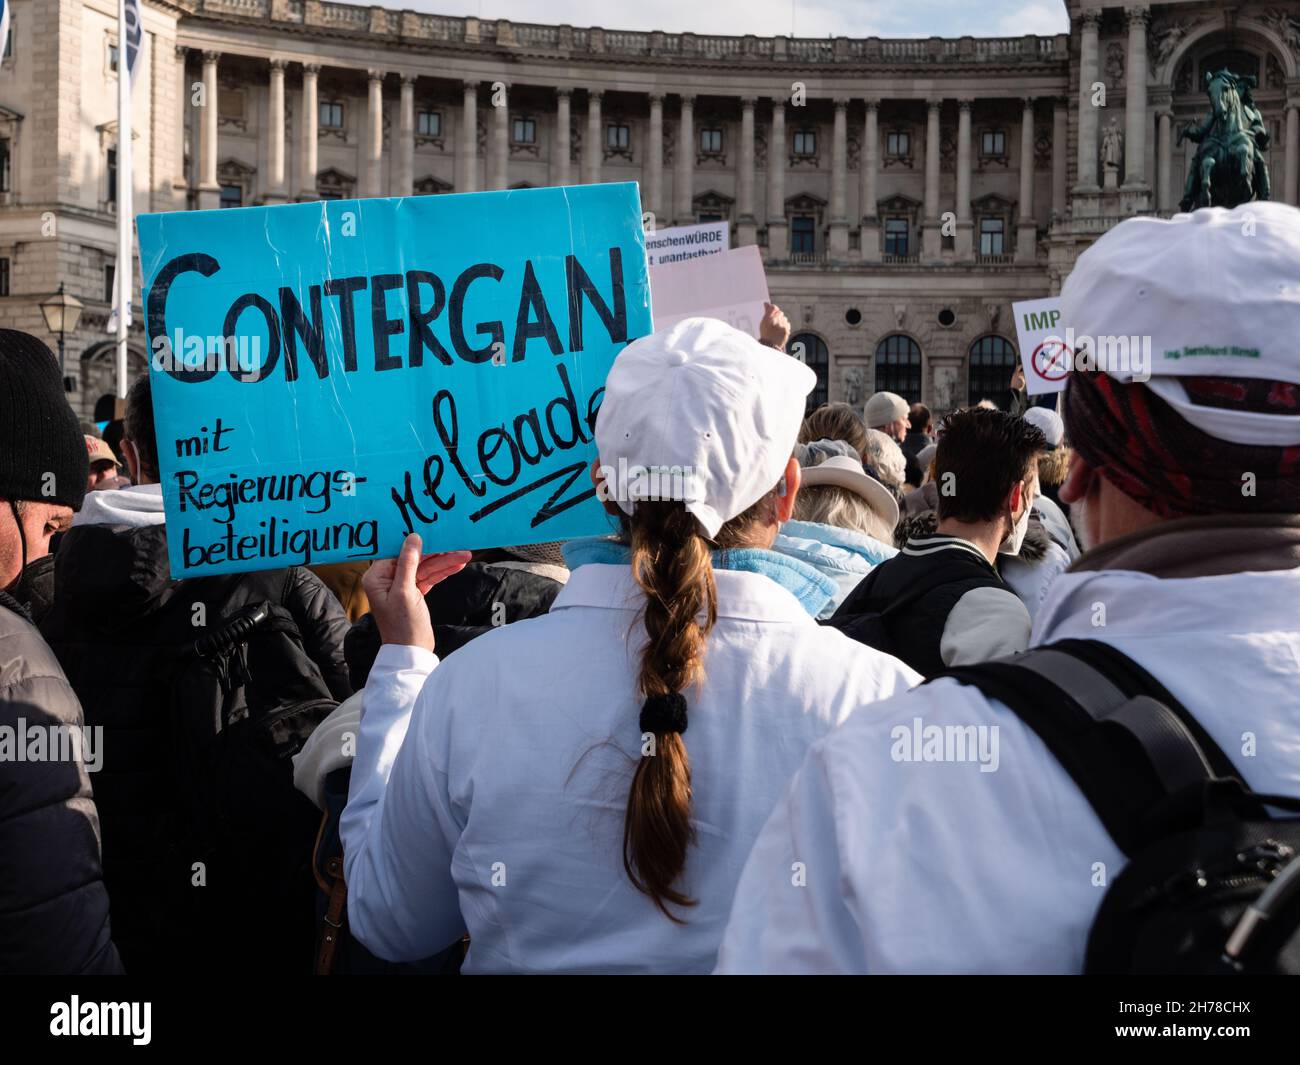 Vienna, Austria - Novembre 20 2021: Protesta anti-vaccinazione alla dimostrazione di Heldenplatz a Vienna, segno d'insign 'Contergan Reloaded'. Foto Stock